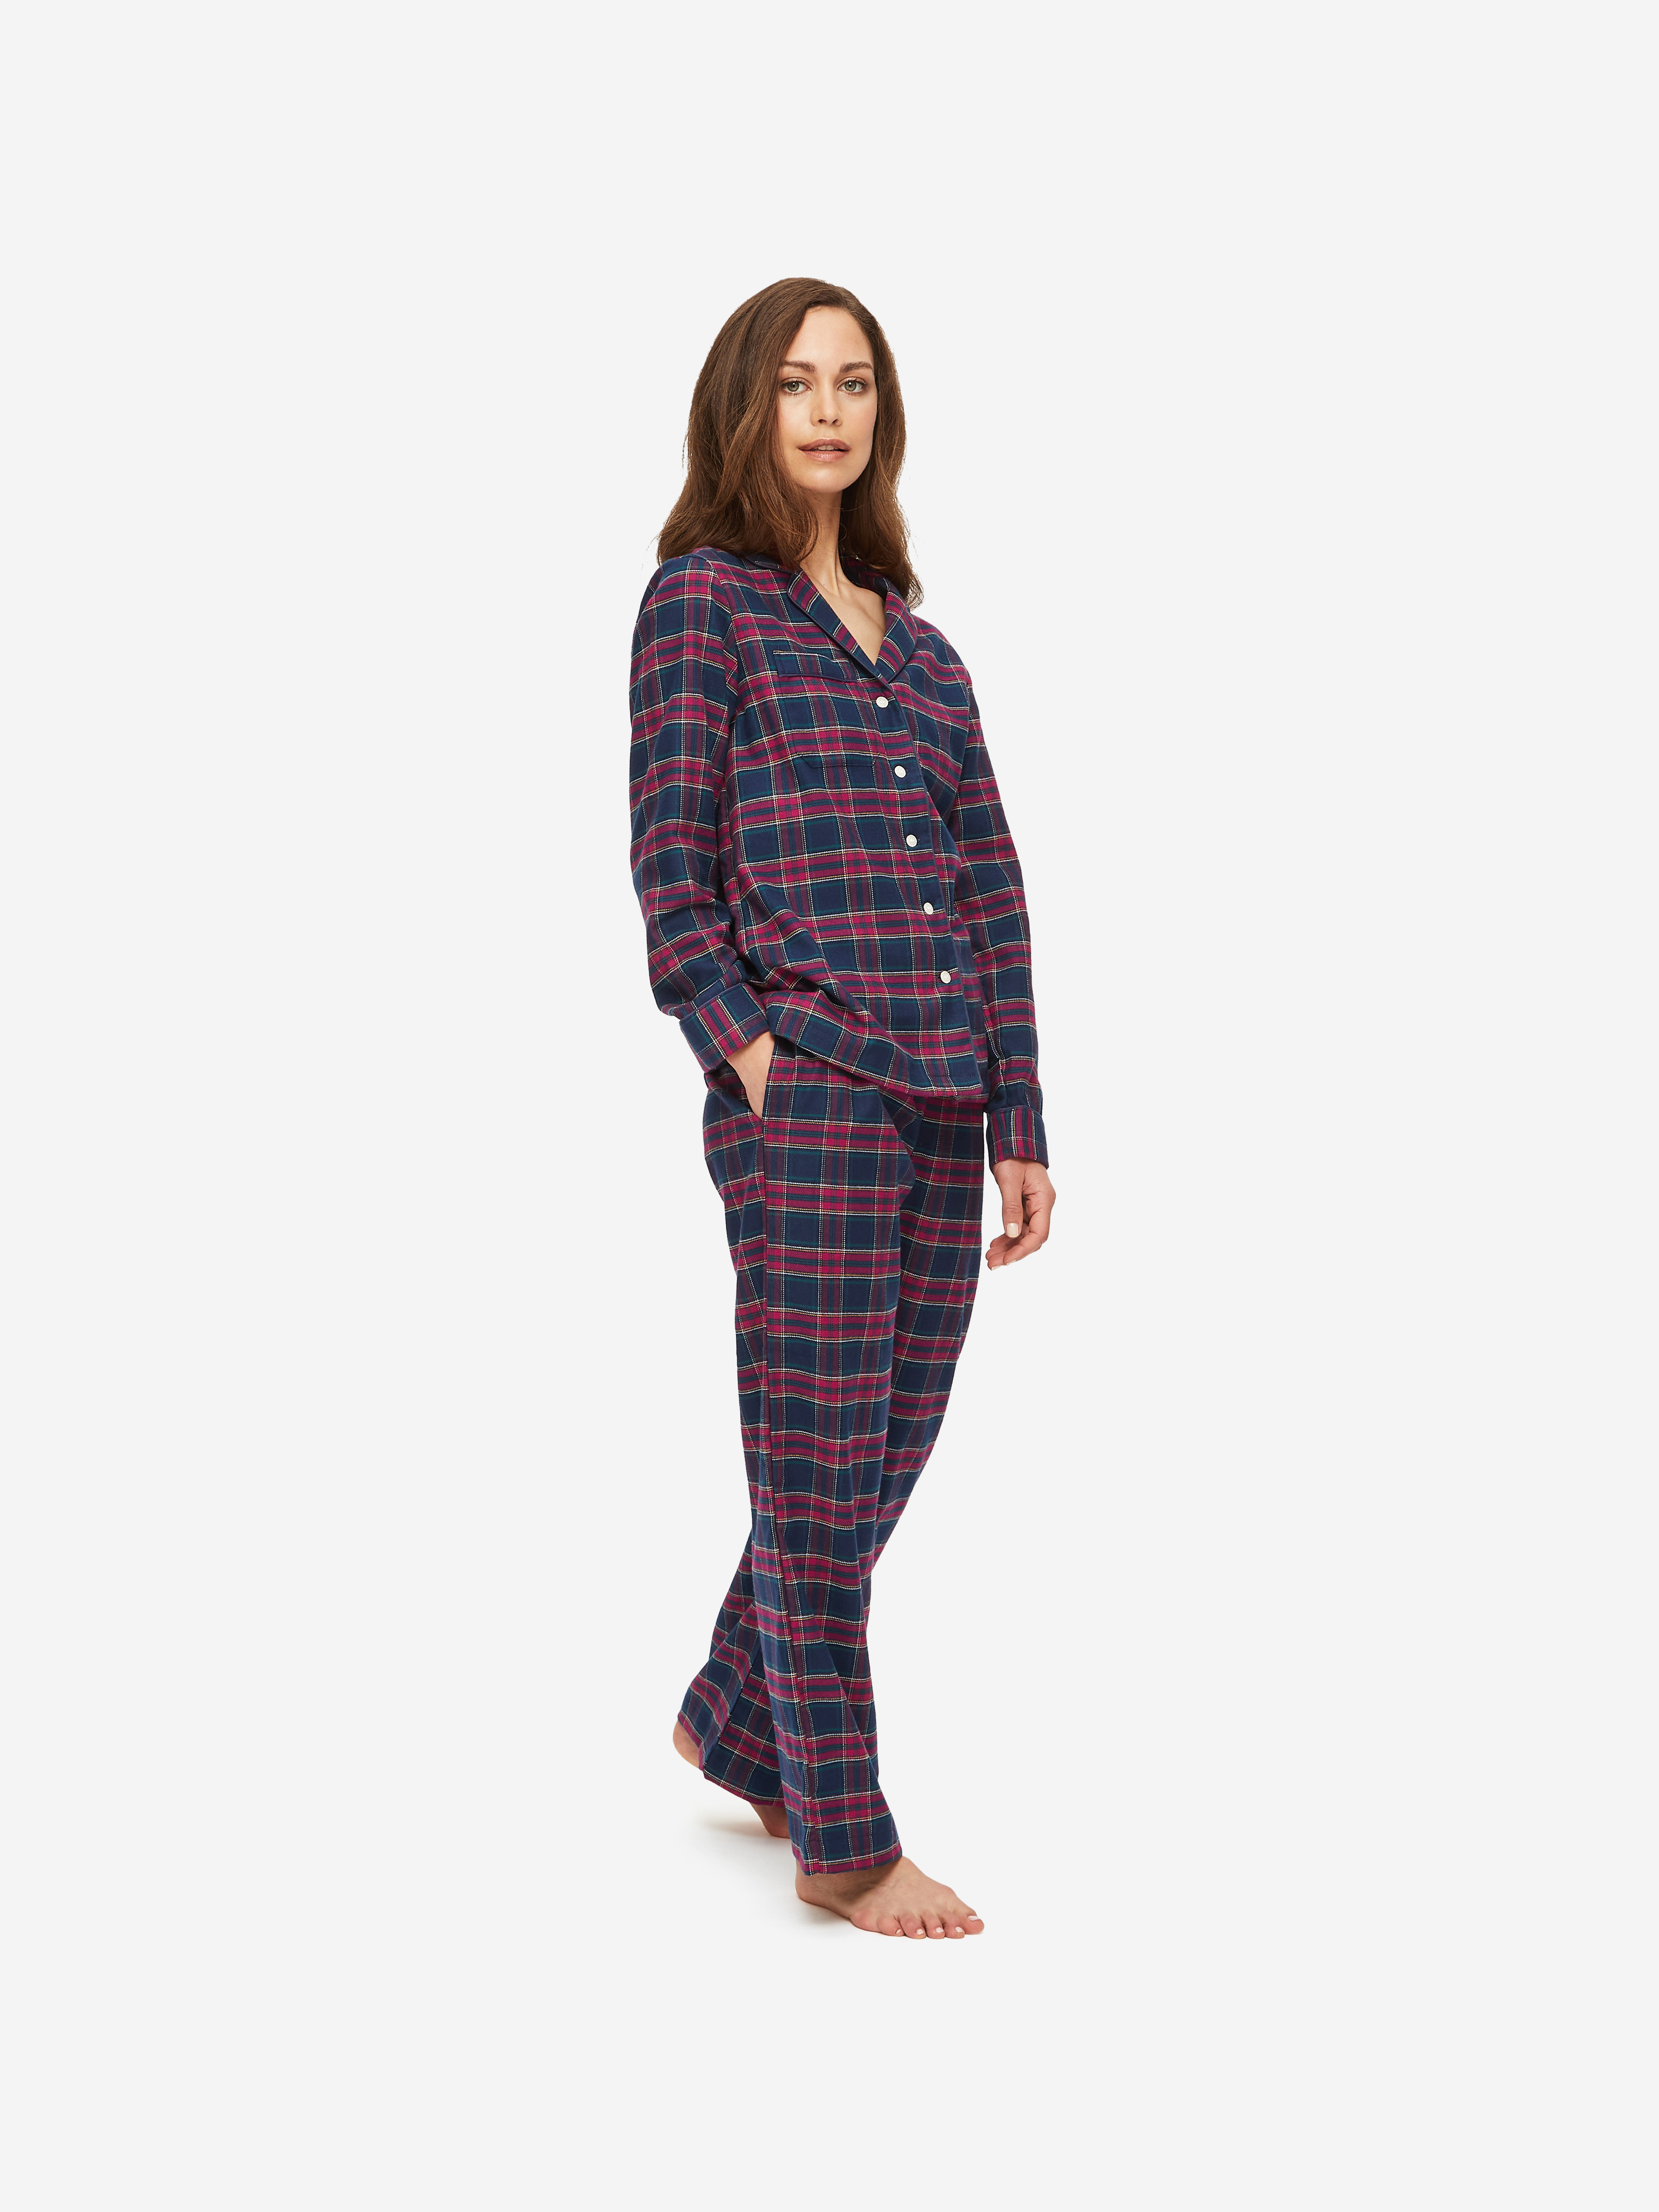 Women's Pyjamas Kelburn 20 Brushed Cotton Multi